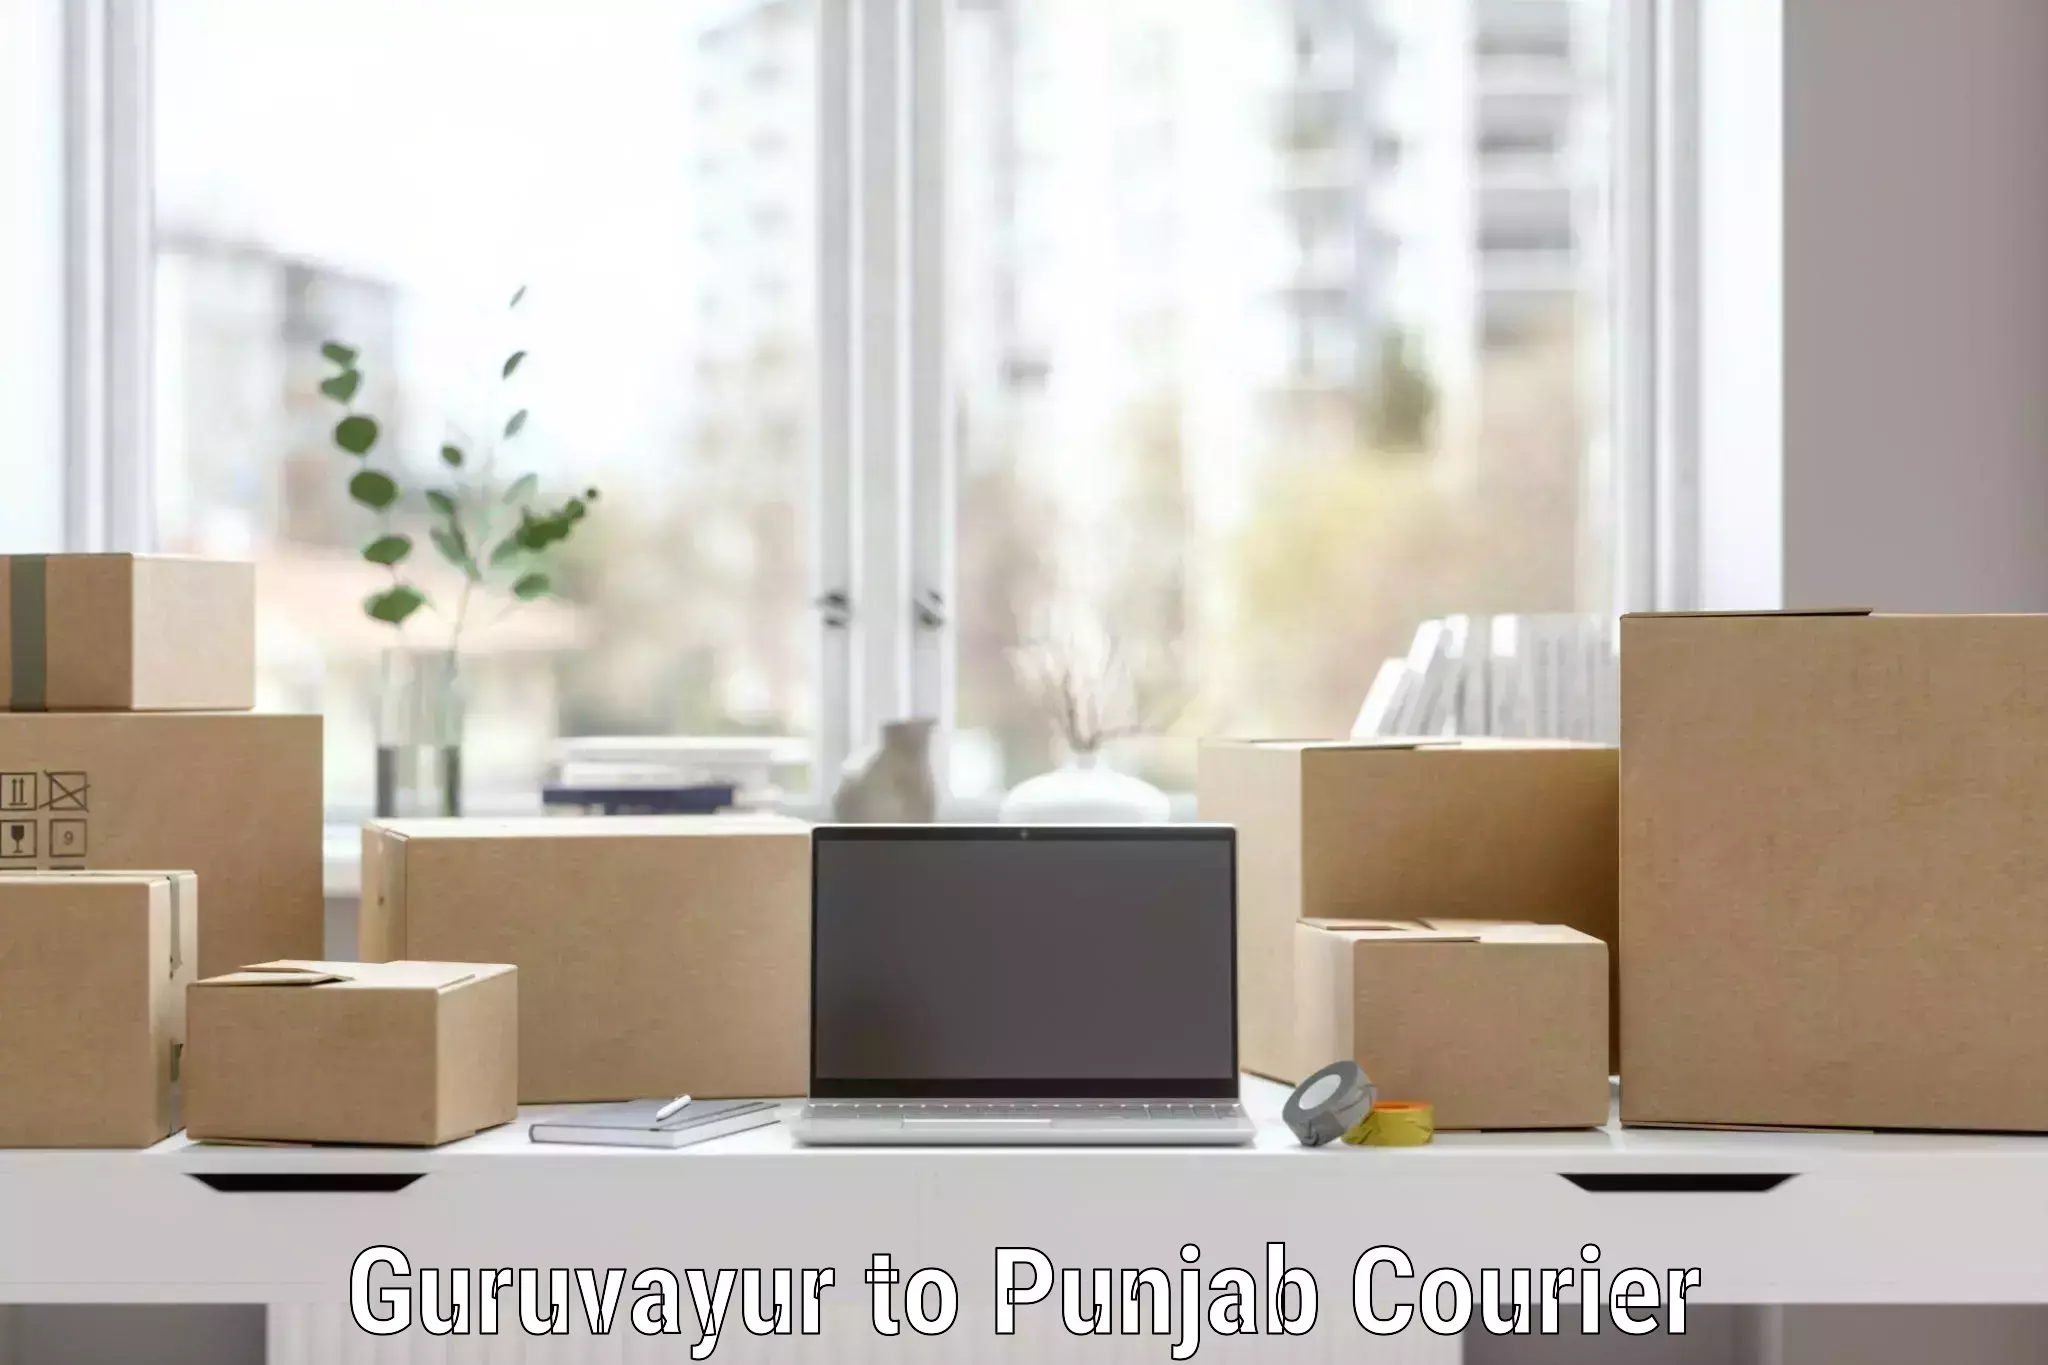 Home furniture moving Guruvayur to Punjab